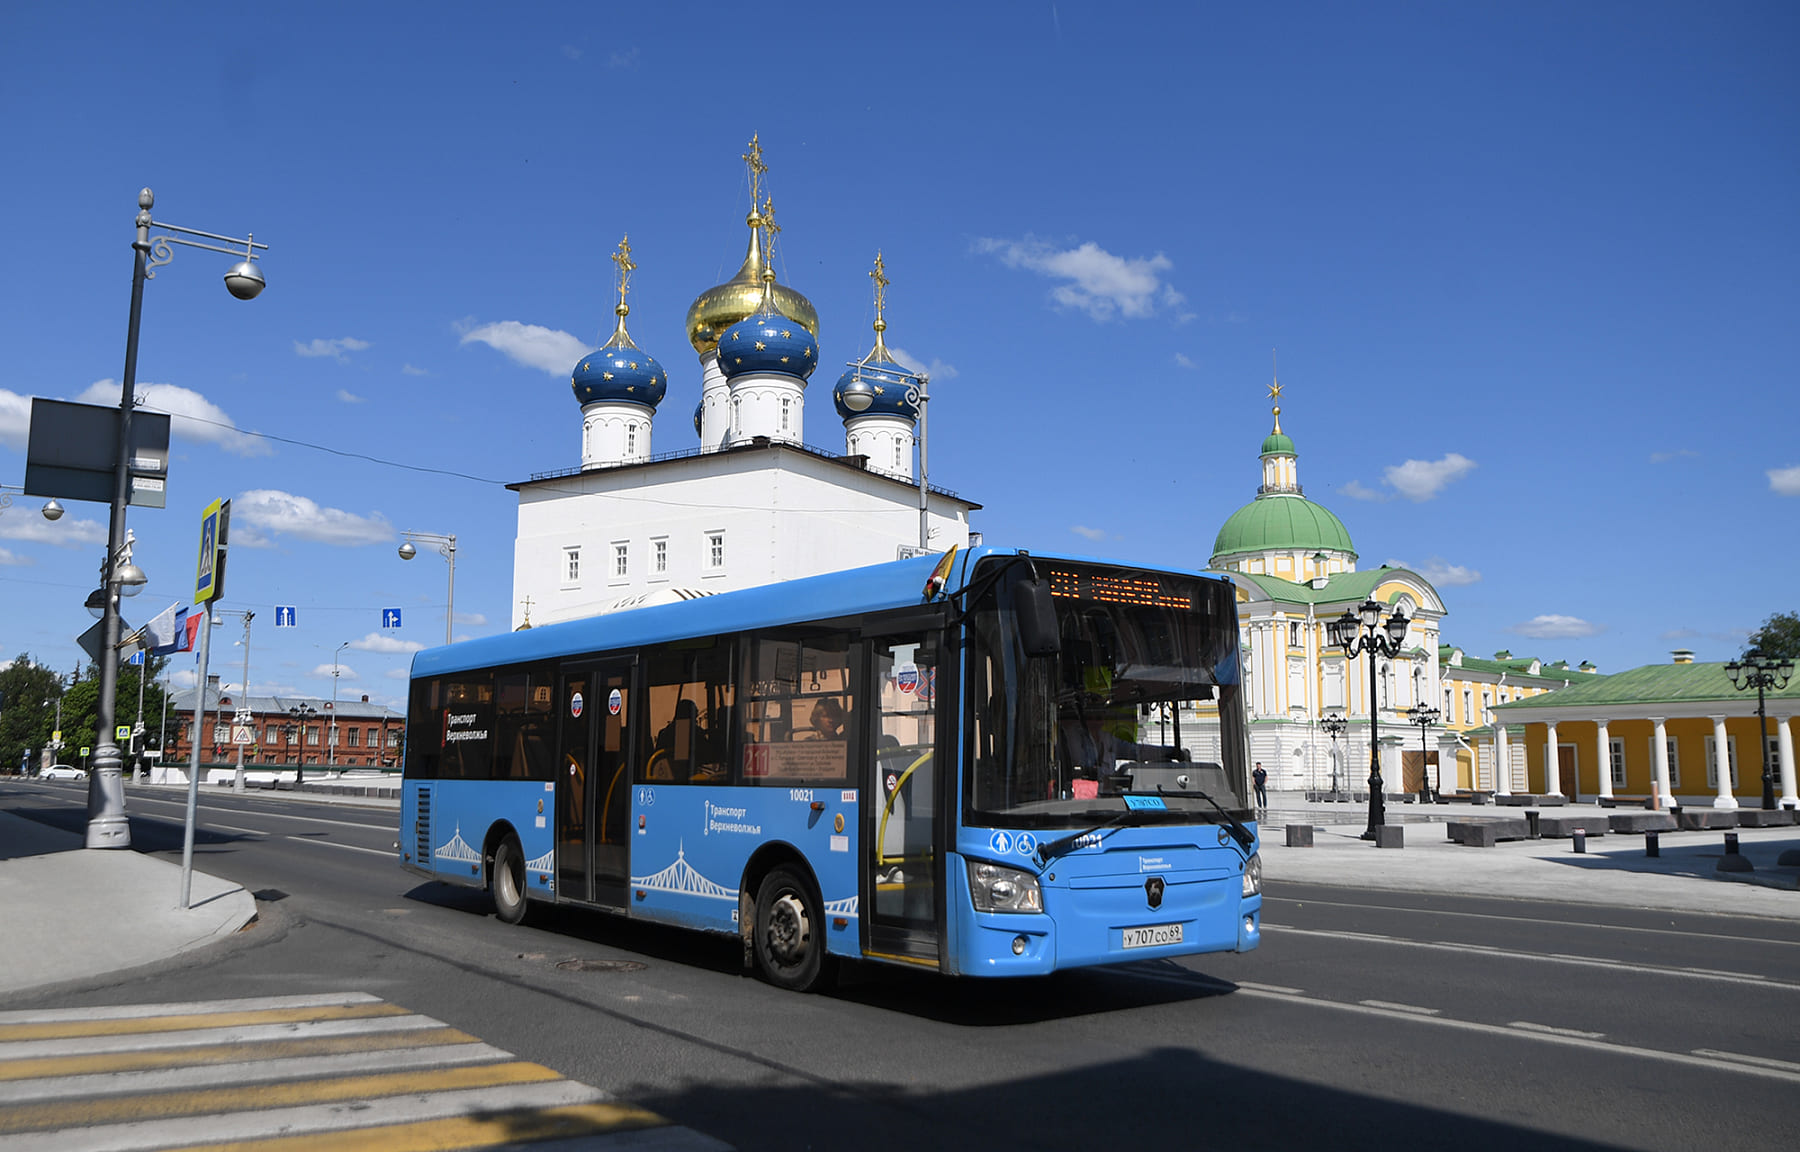 Более 9,4 миллиона поездок совершено по льготным проездным в автобусах «Транспорта Верхневолжья» на территории Тверской области